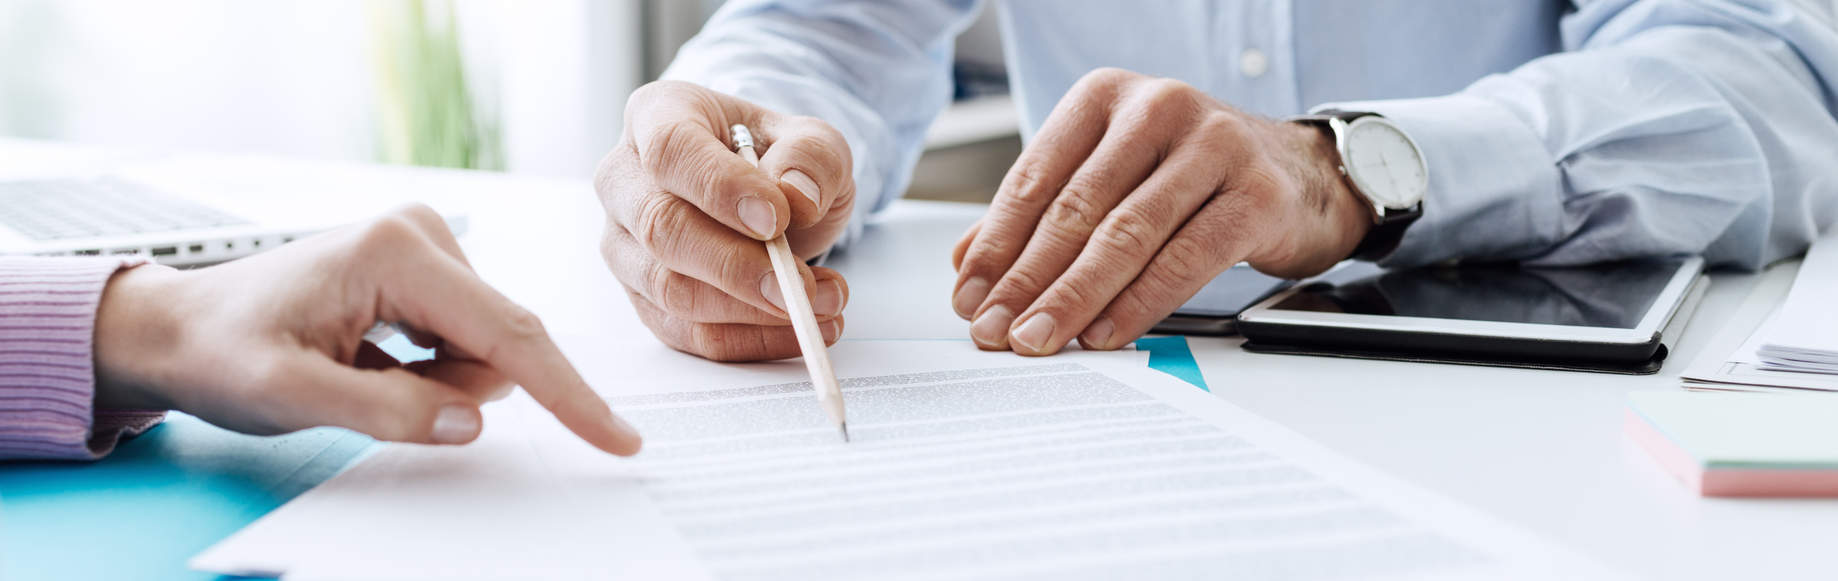 Hände bei Unterschrift eines Dokumentes - bildlich für Formulare für Versicherungsberatung